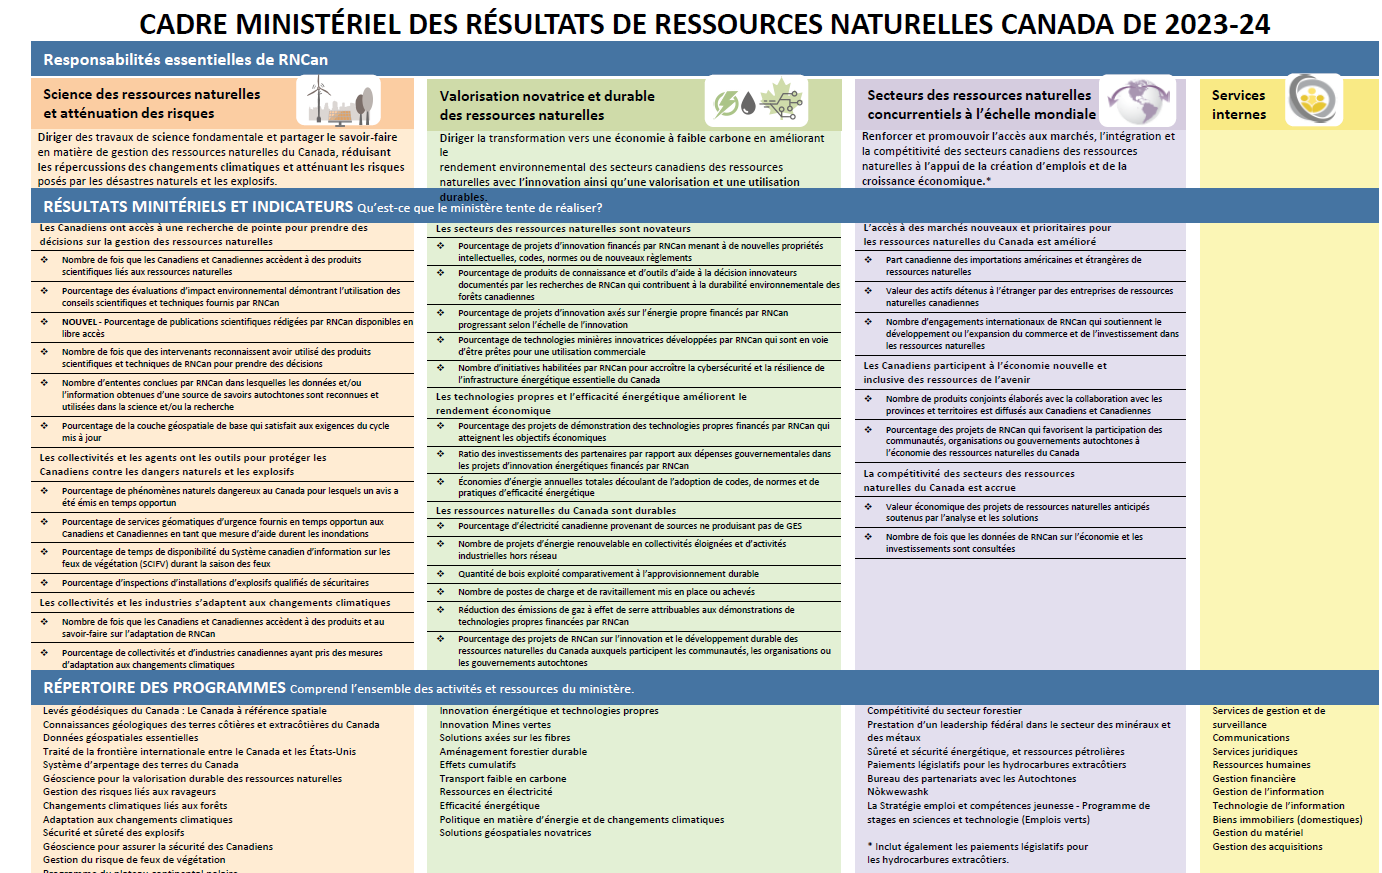 Infographique : CADRE MINISTÉRIEL DES RÉSULTATS DE RESSOURCES NATURELLES CANADA DE 2023-2024